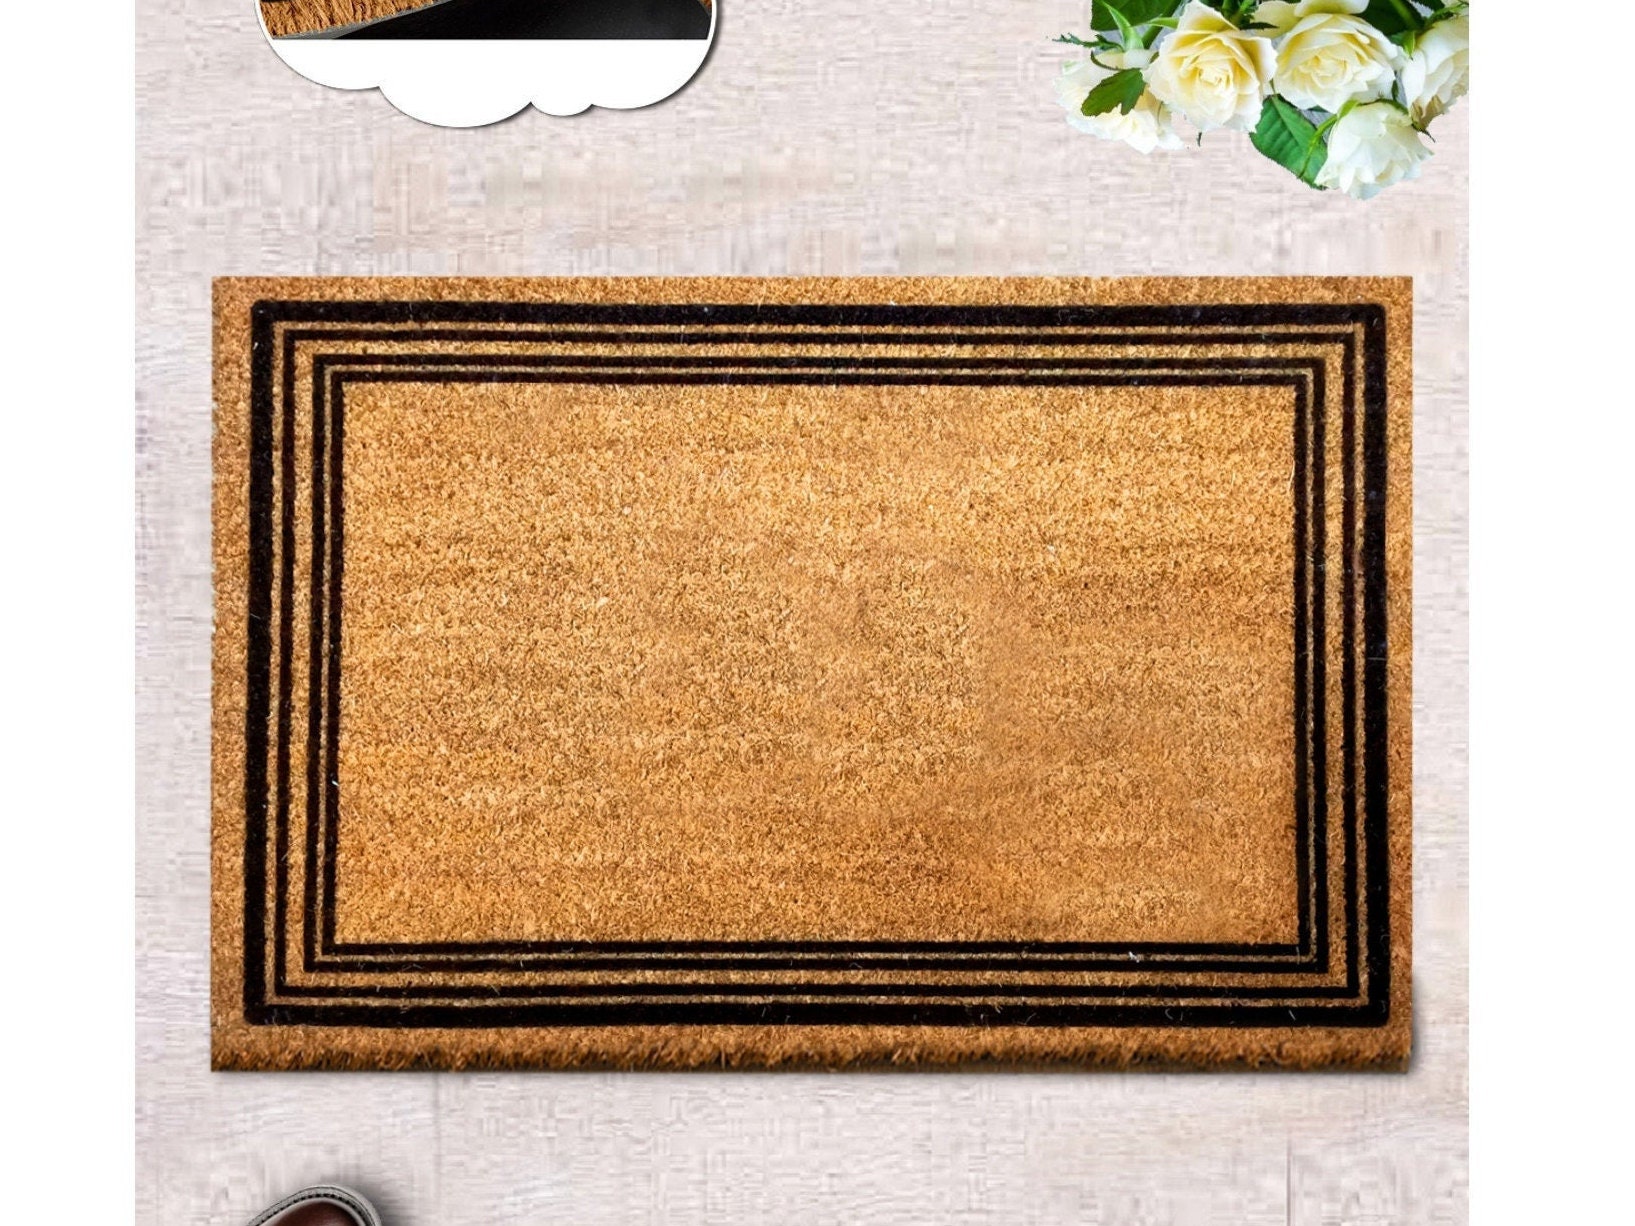 coappsuiop carpet coir welcome mats for front door, funny door mats outside  